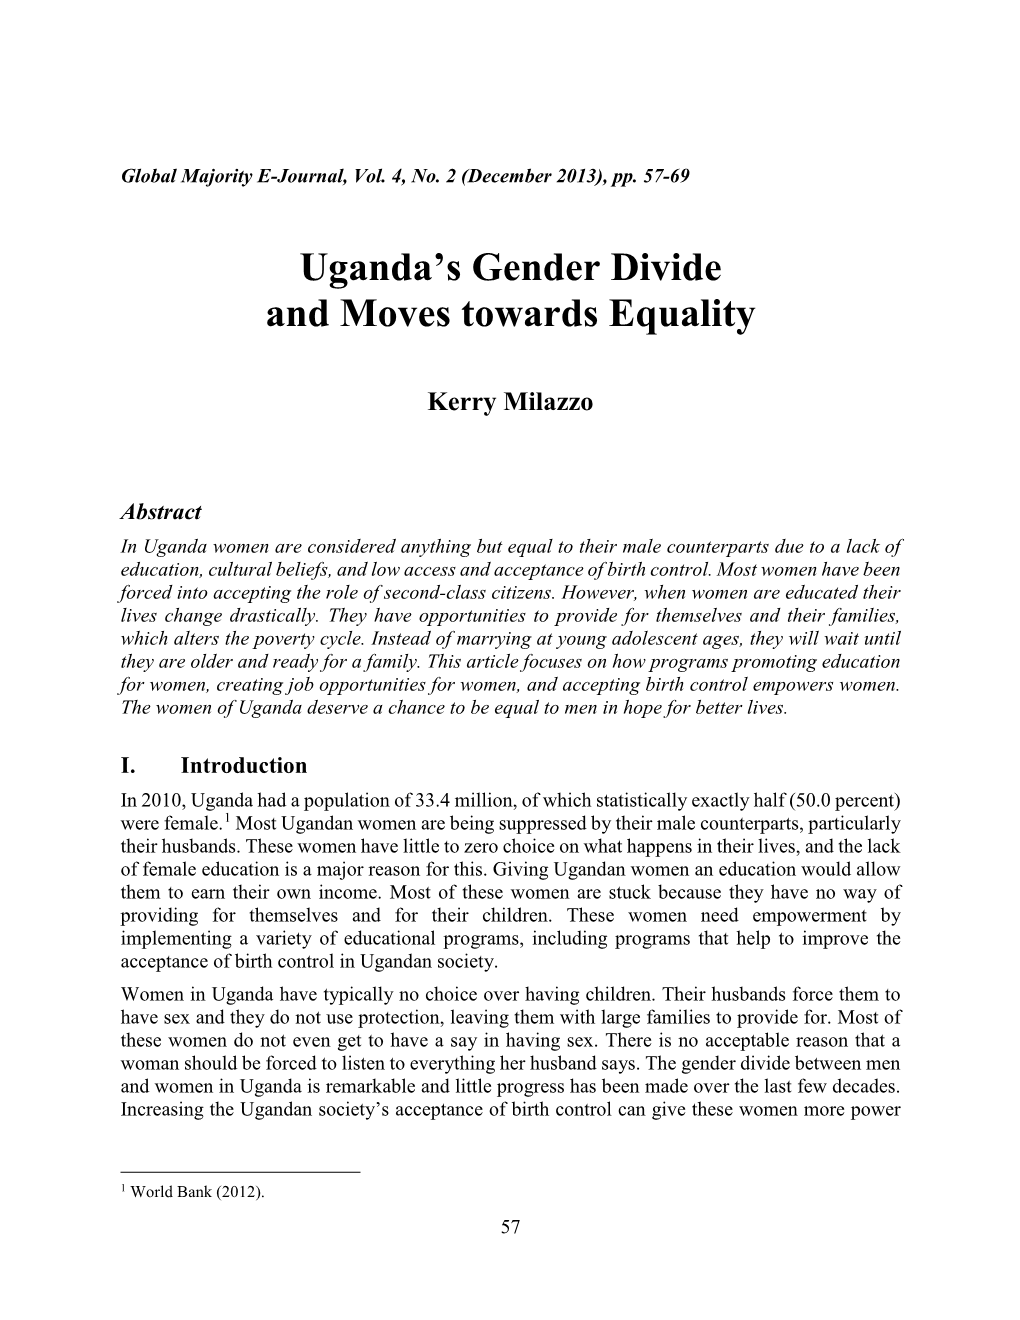 Uganda's Gender Divide and Moves Toward Equality